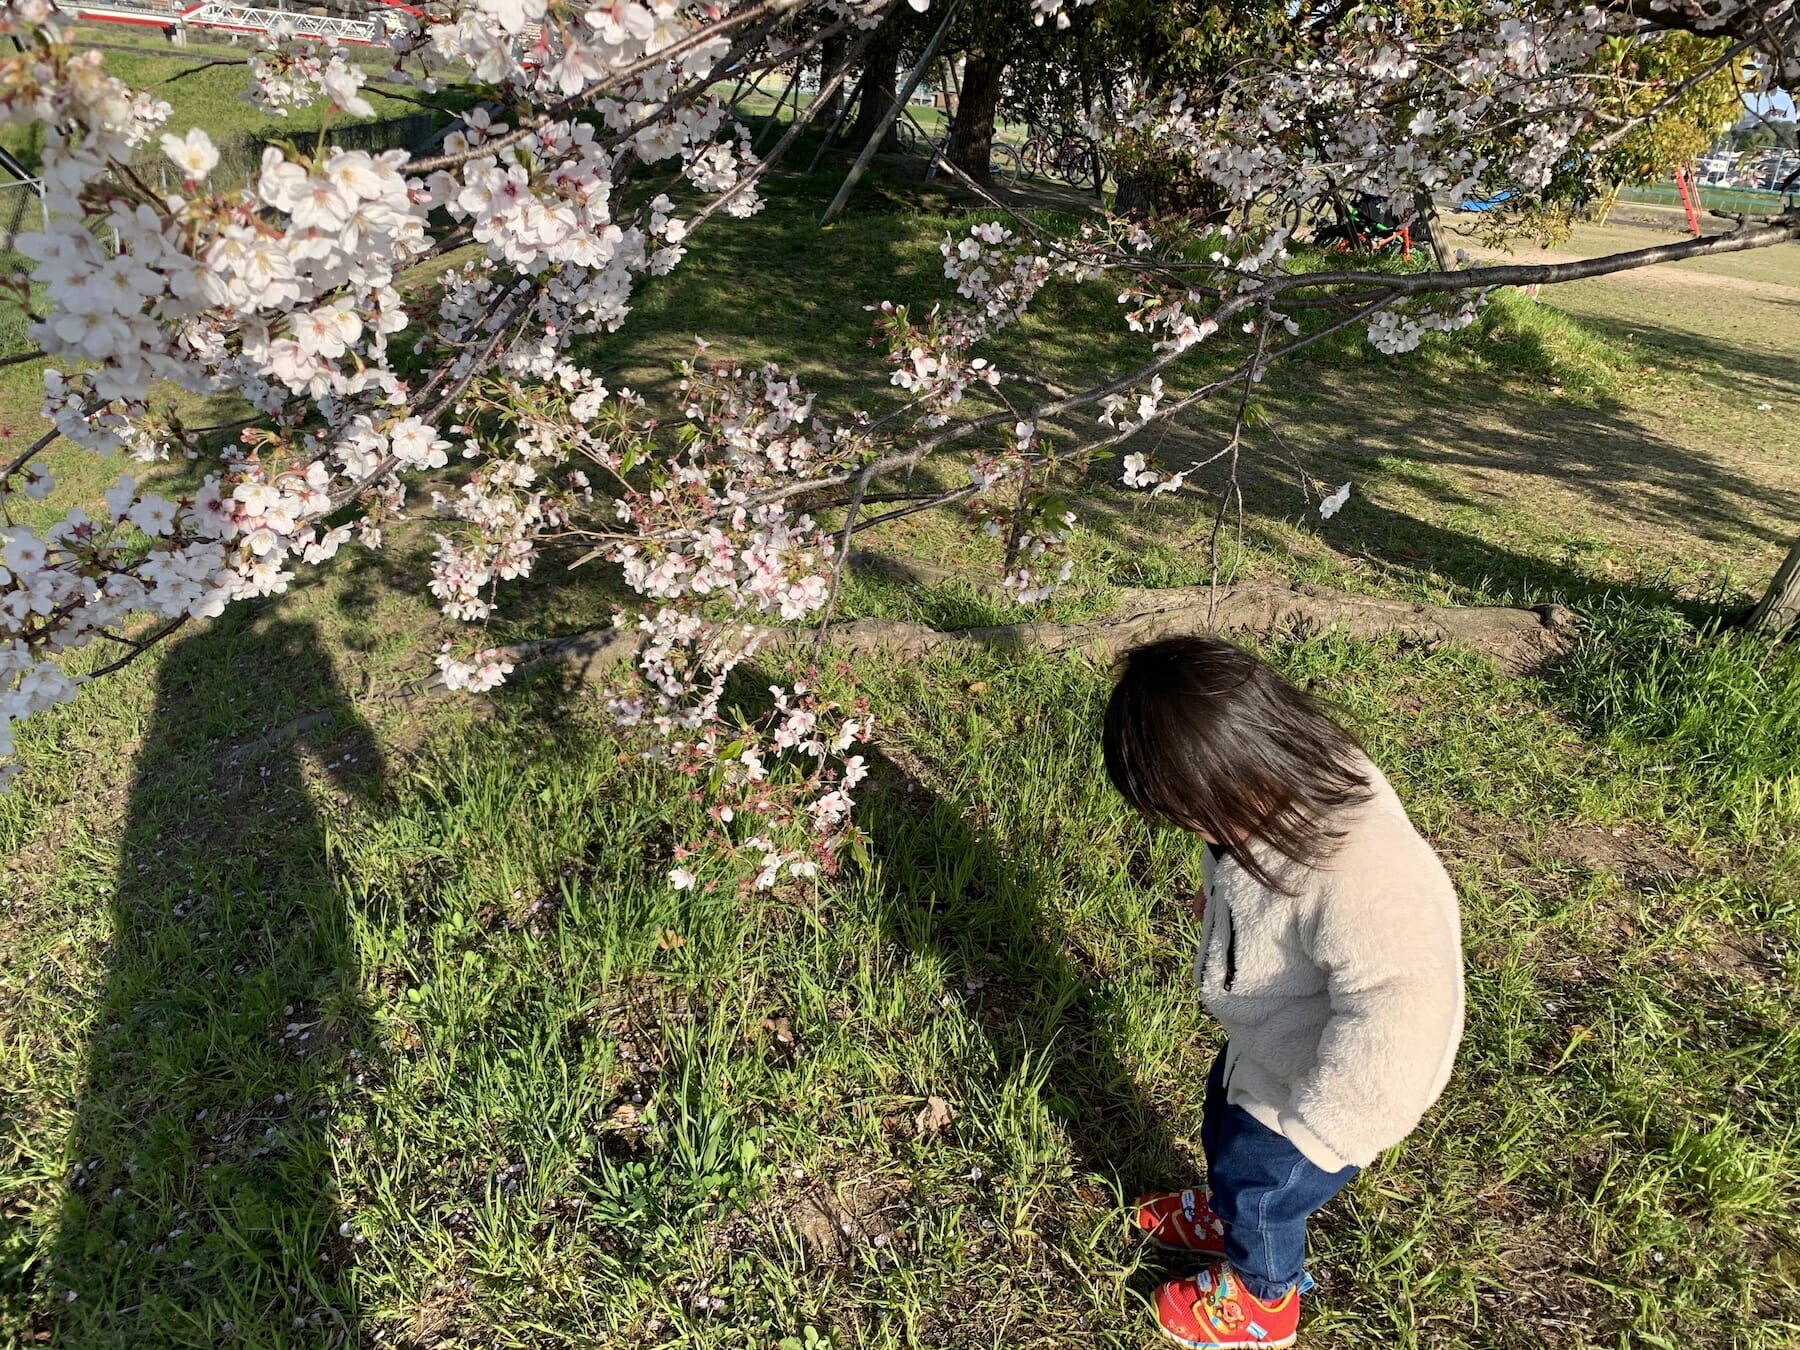 Vol.16 桜を見に散歩に行くと、落ちた花びらの方に興味を持つ変わり者丸出しの娘です